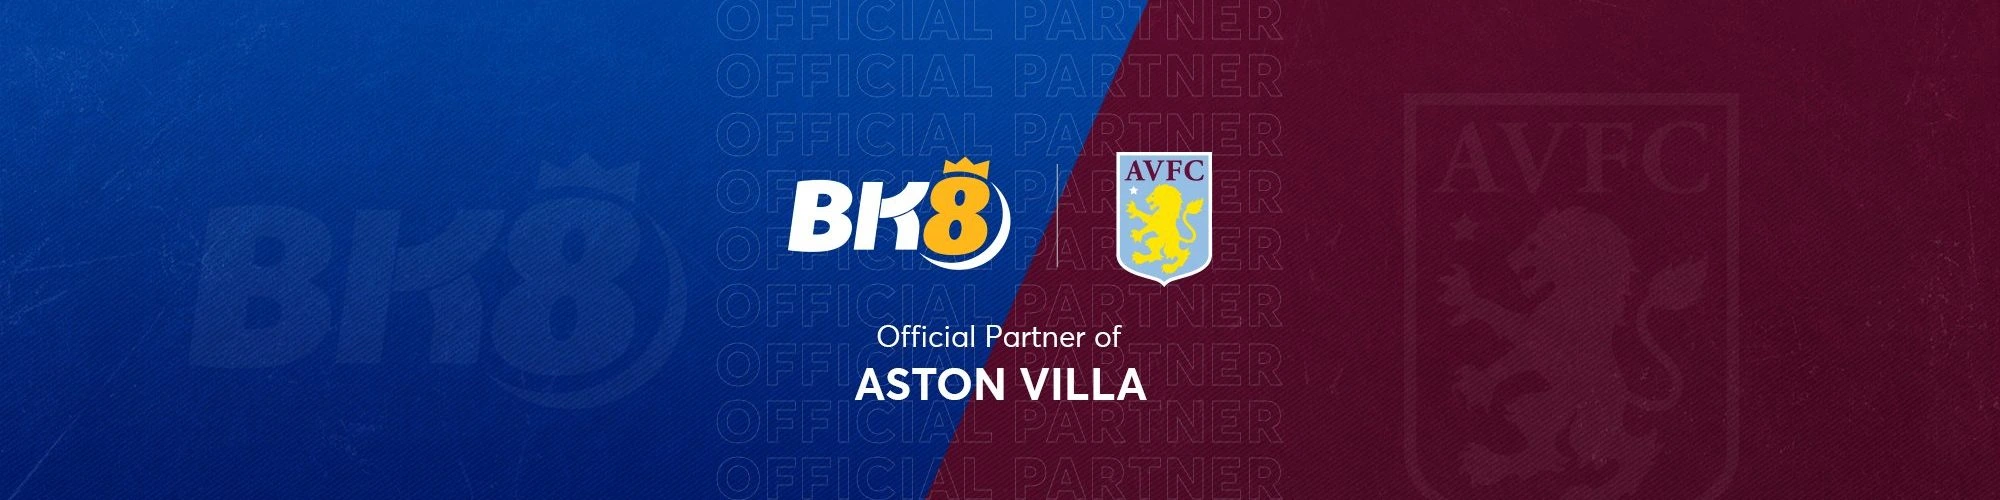 BK8-Aston-Villa